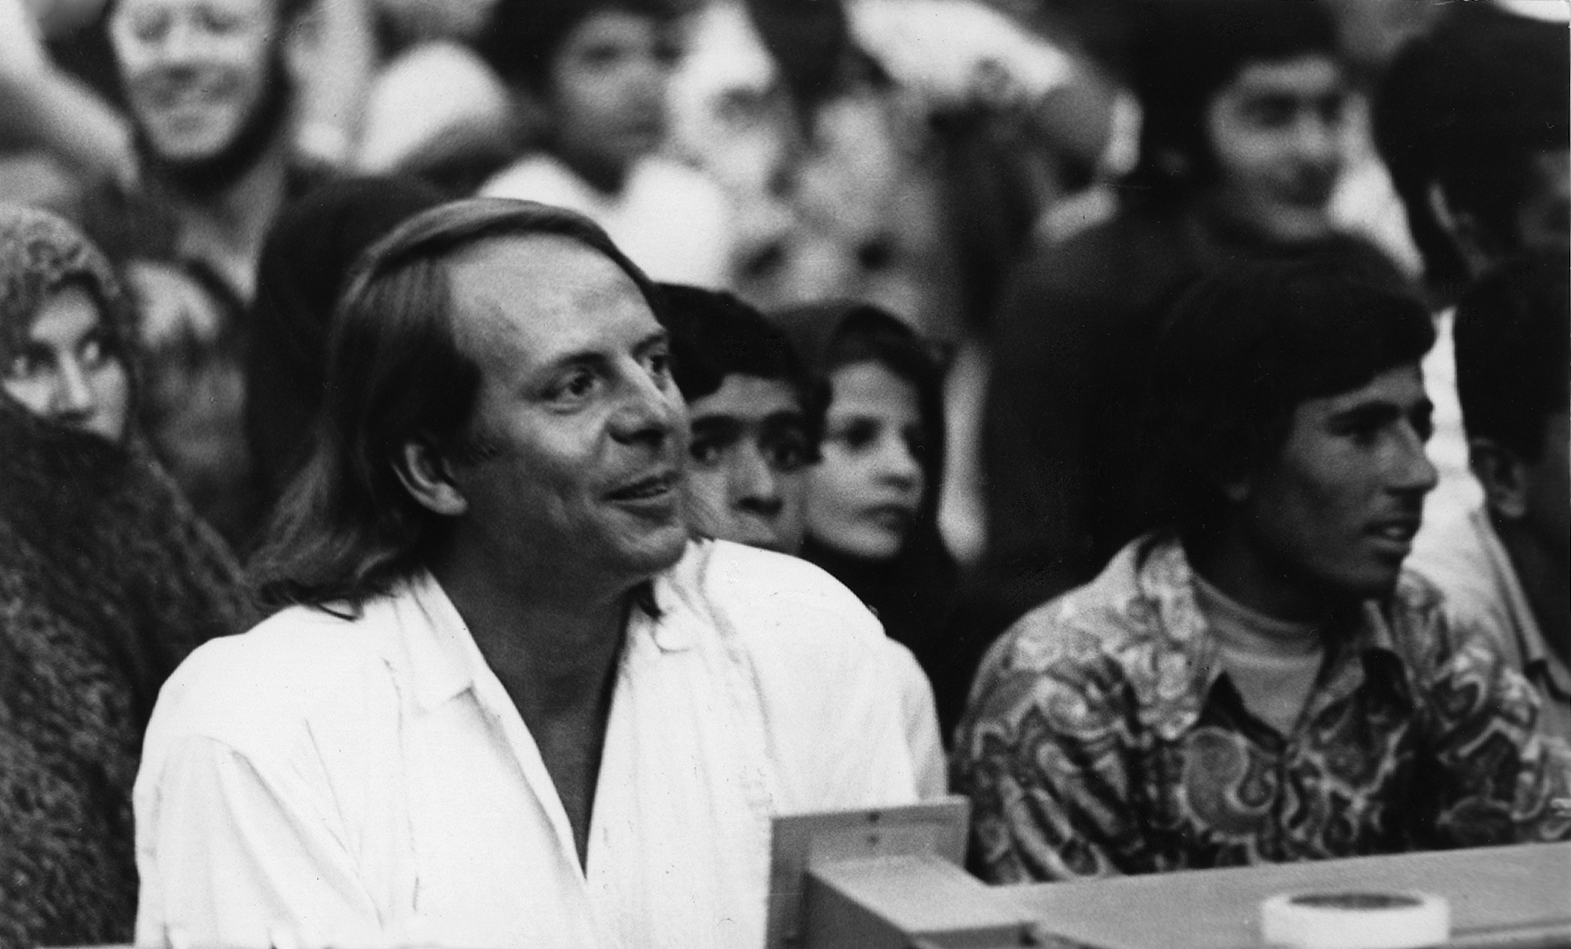 Karlheinz Stockhausen auf dem Schiras-Kunstfestival im Iran, 1972 von unbekannt (CC BY-SA 3.0)